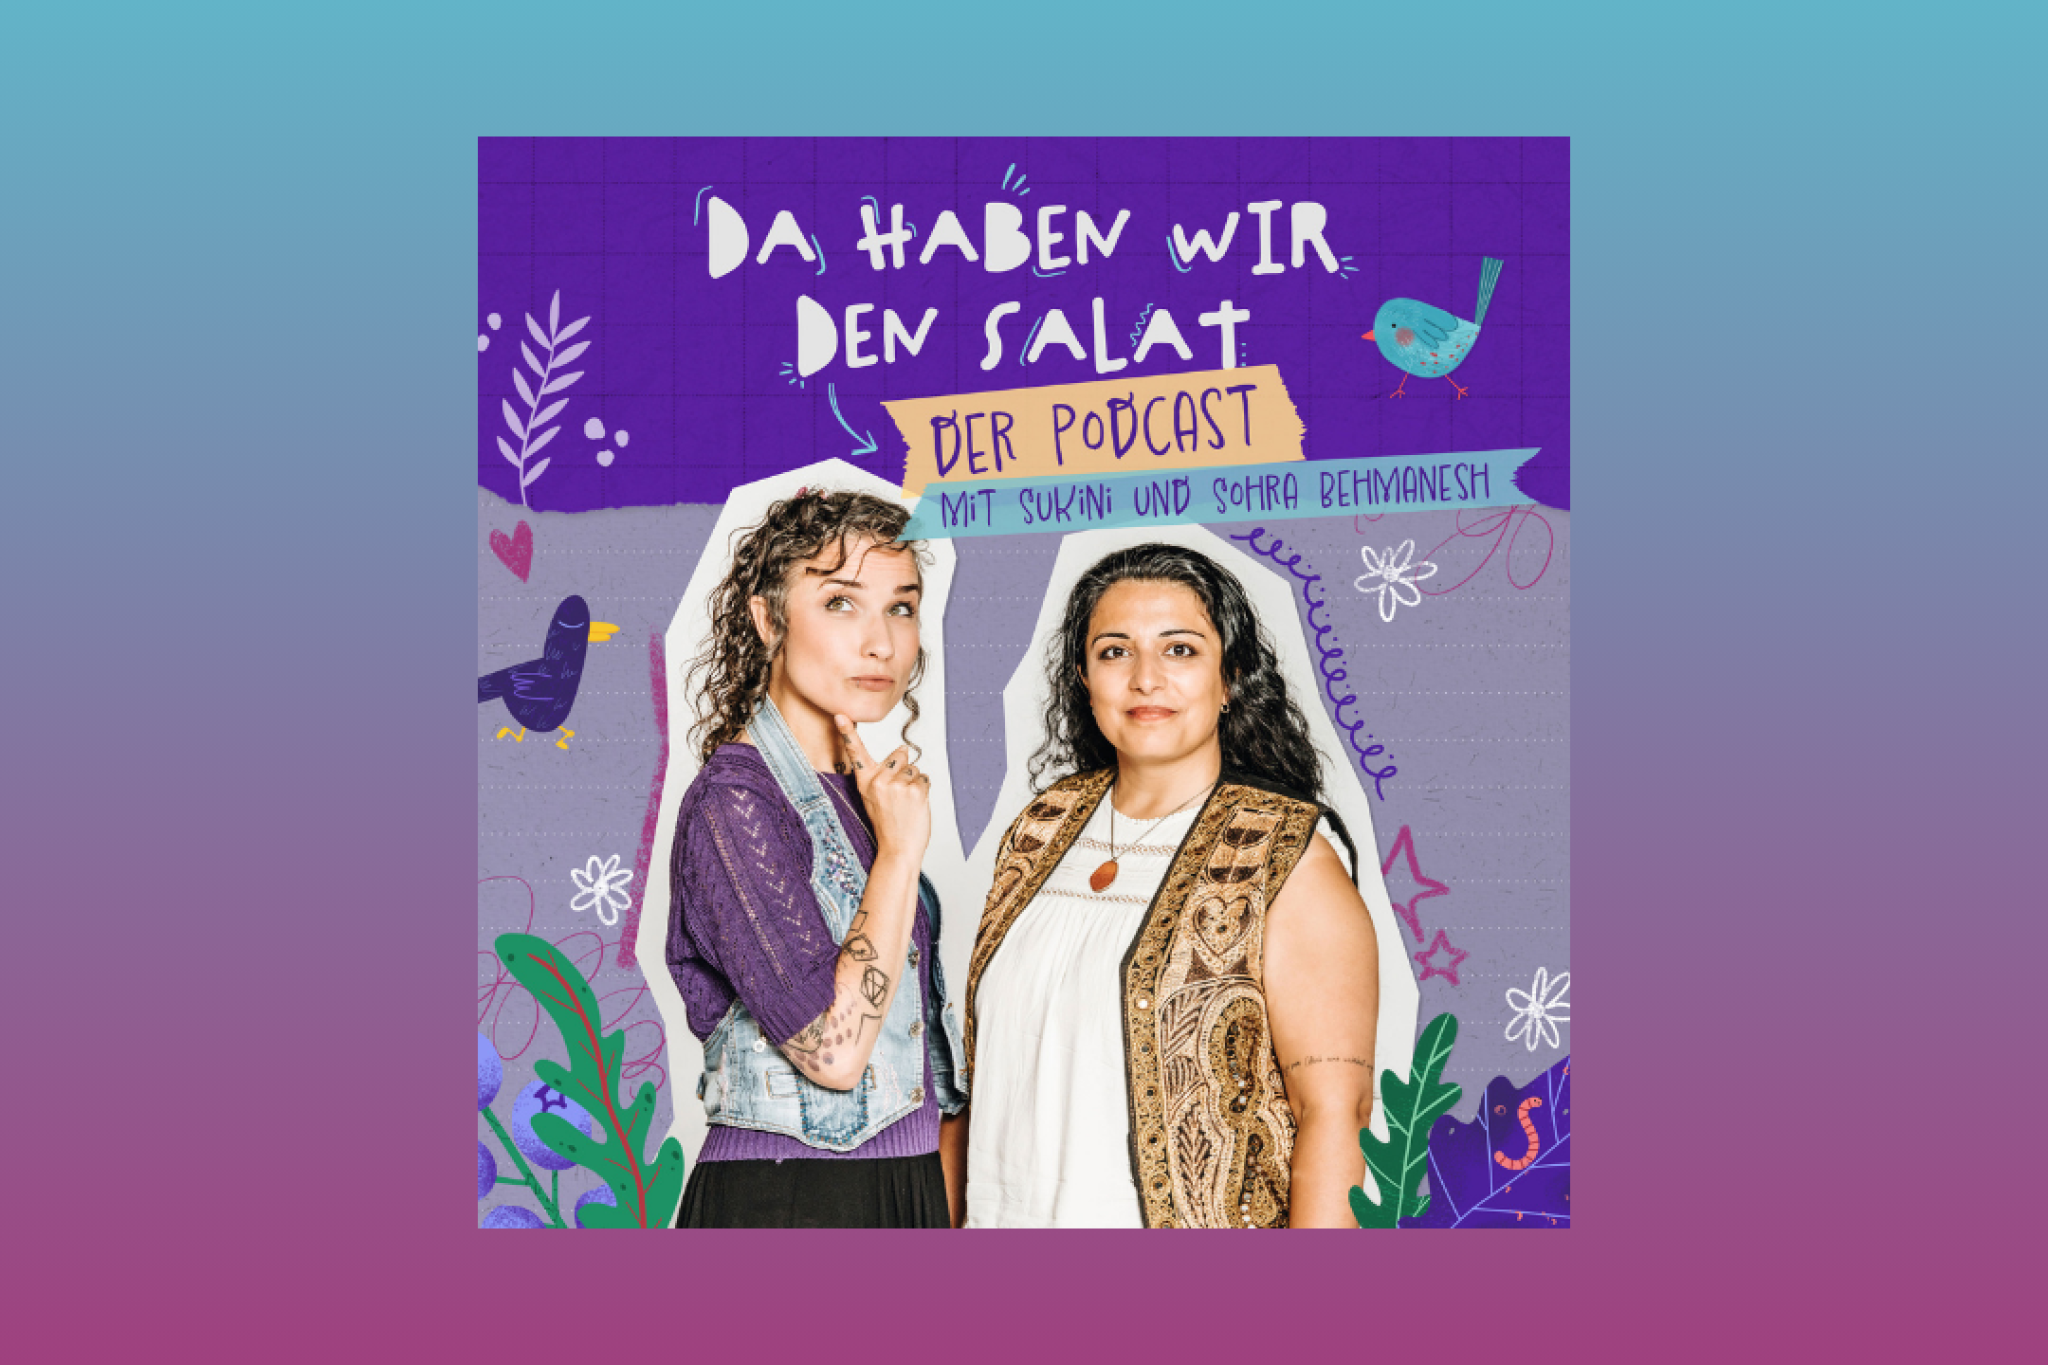 Der neue Podcast von Sukini und Sohra Behmanesh!